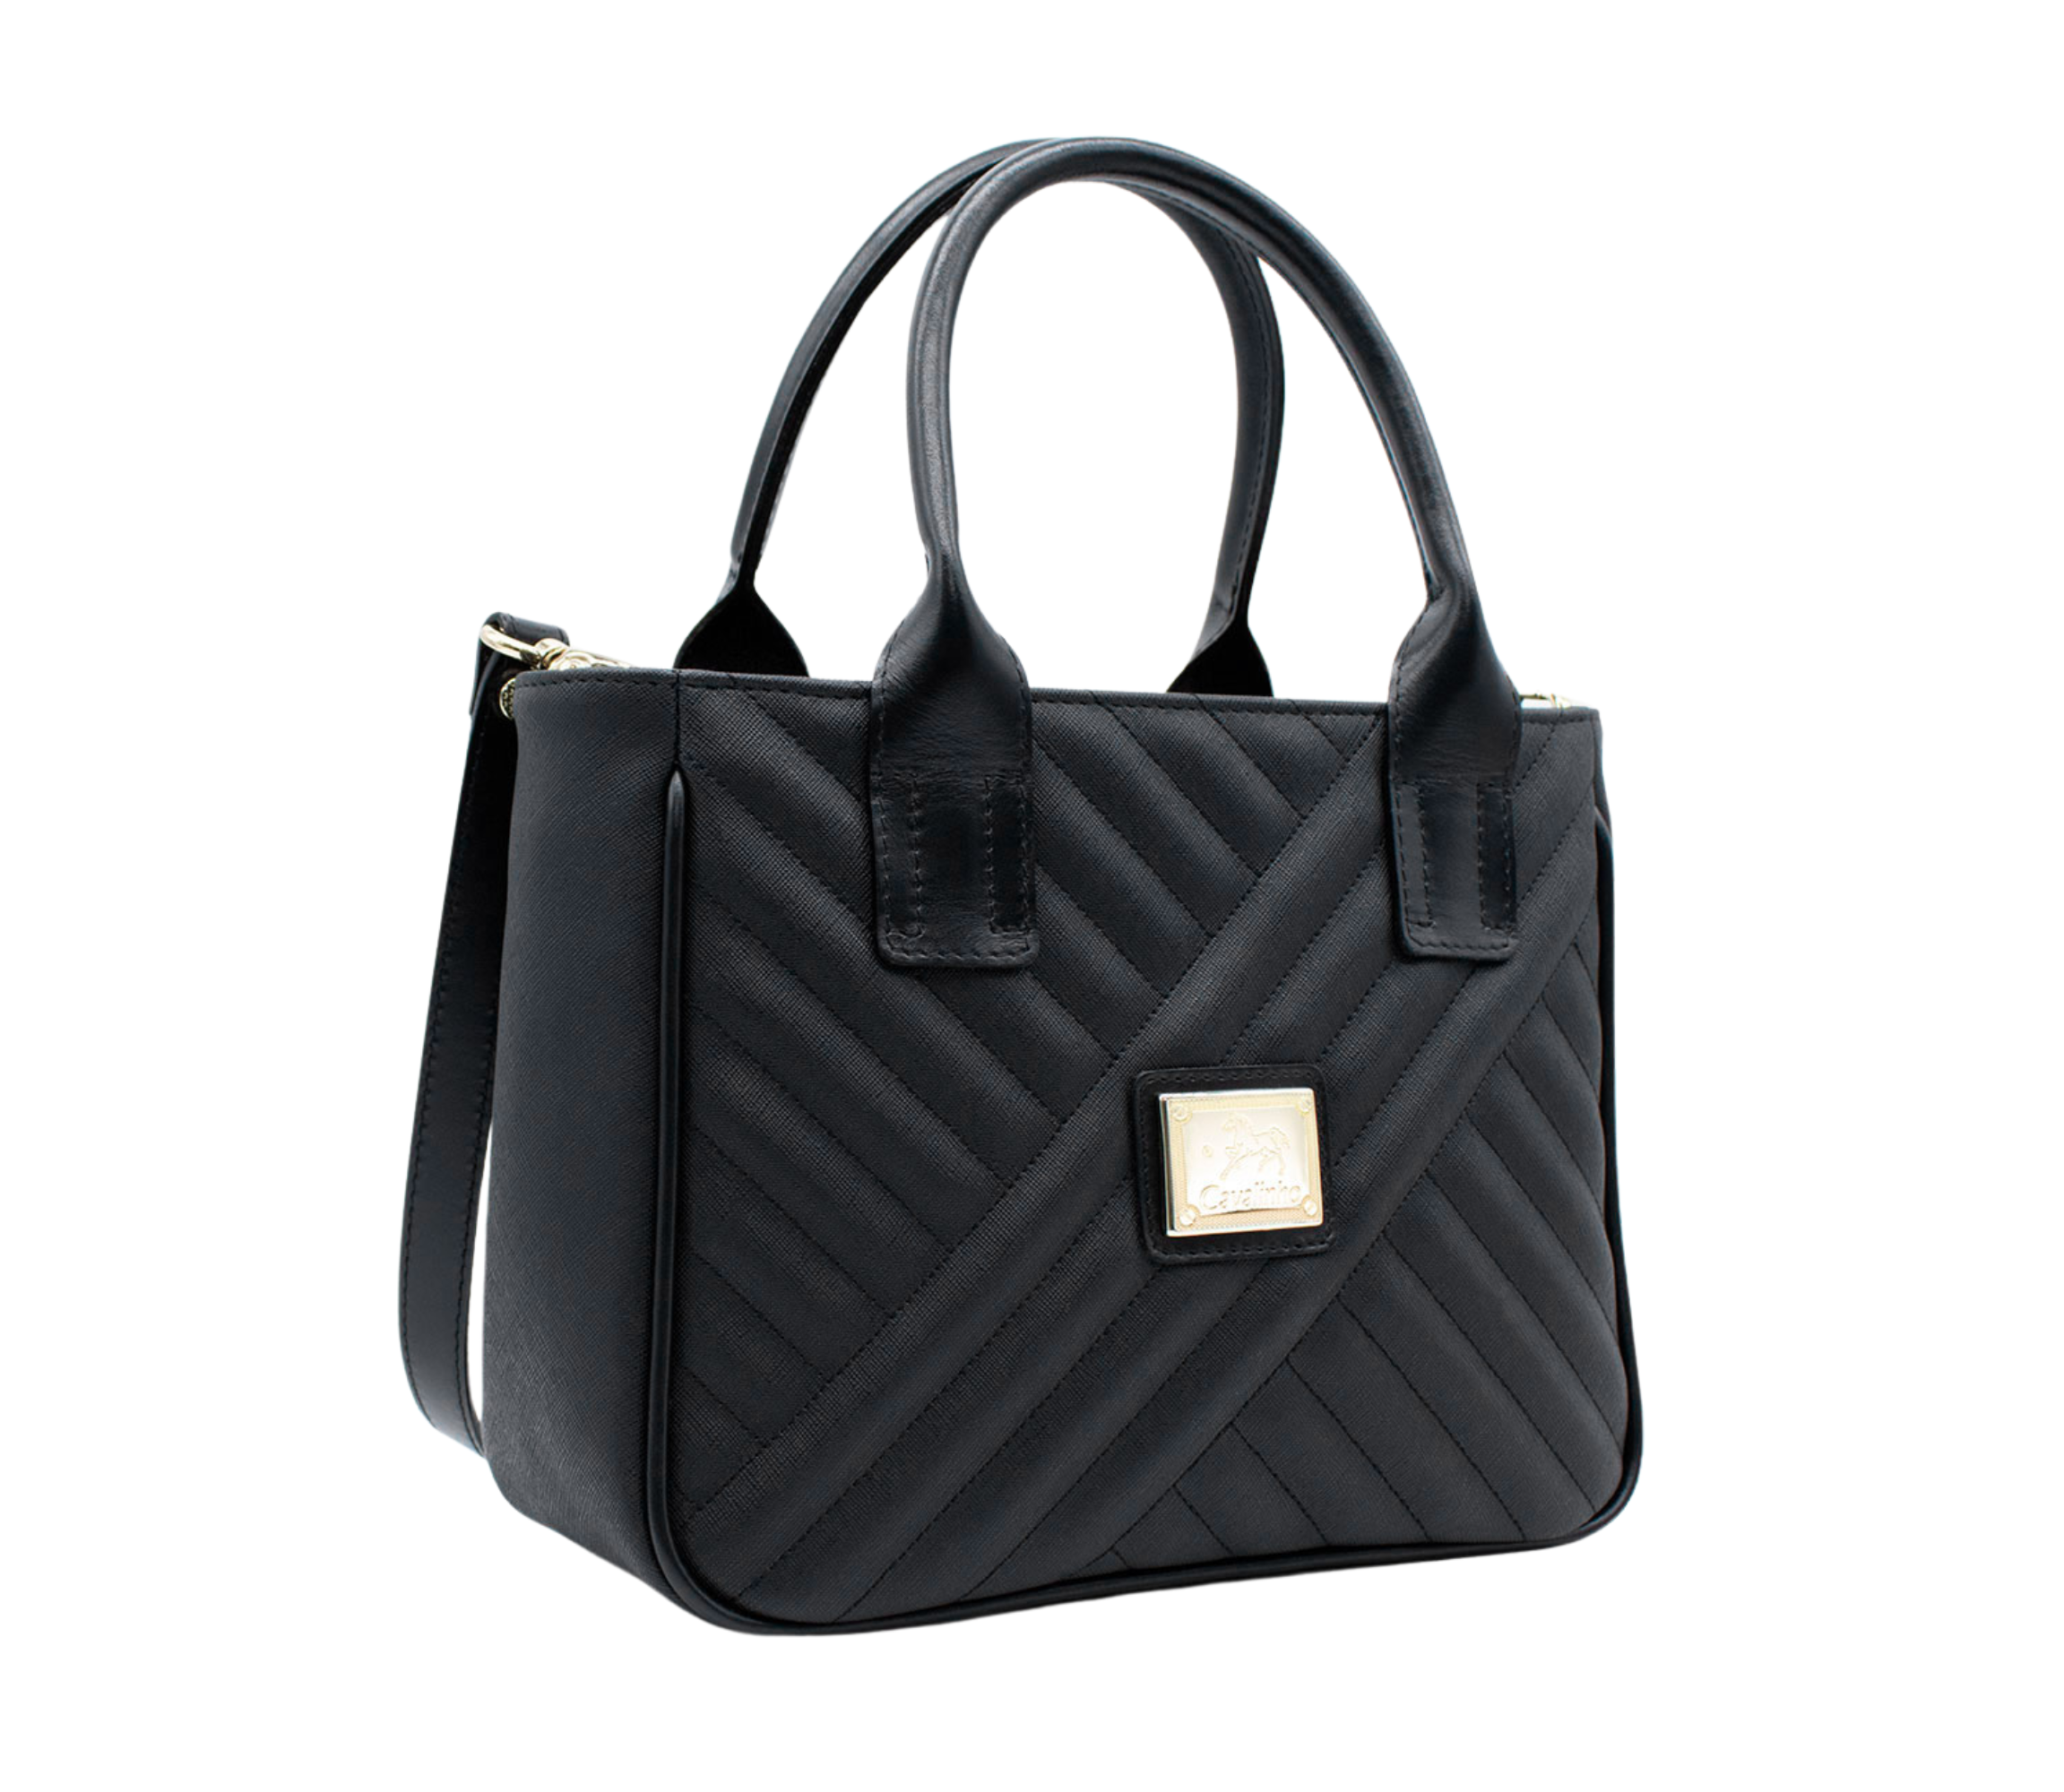 Cavalinho Charming Handbag SKU 18470507.01 #color_Black